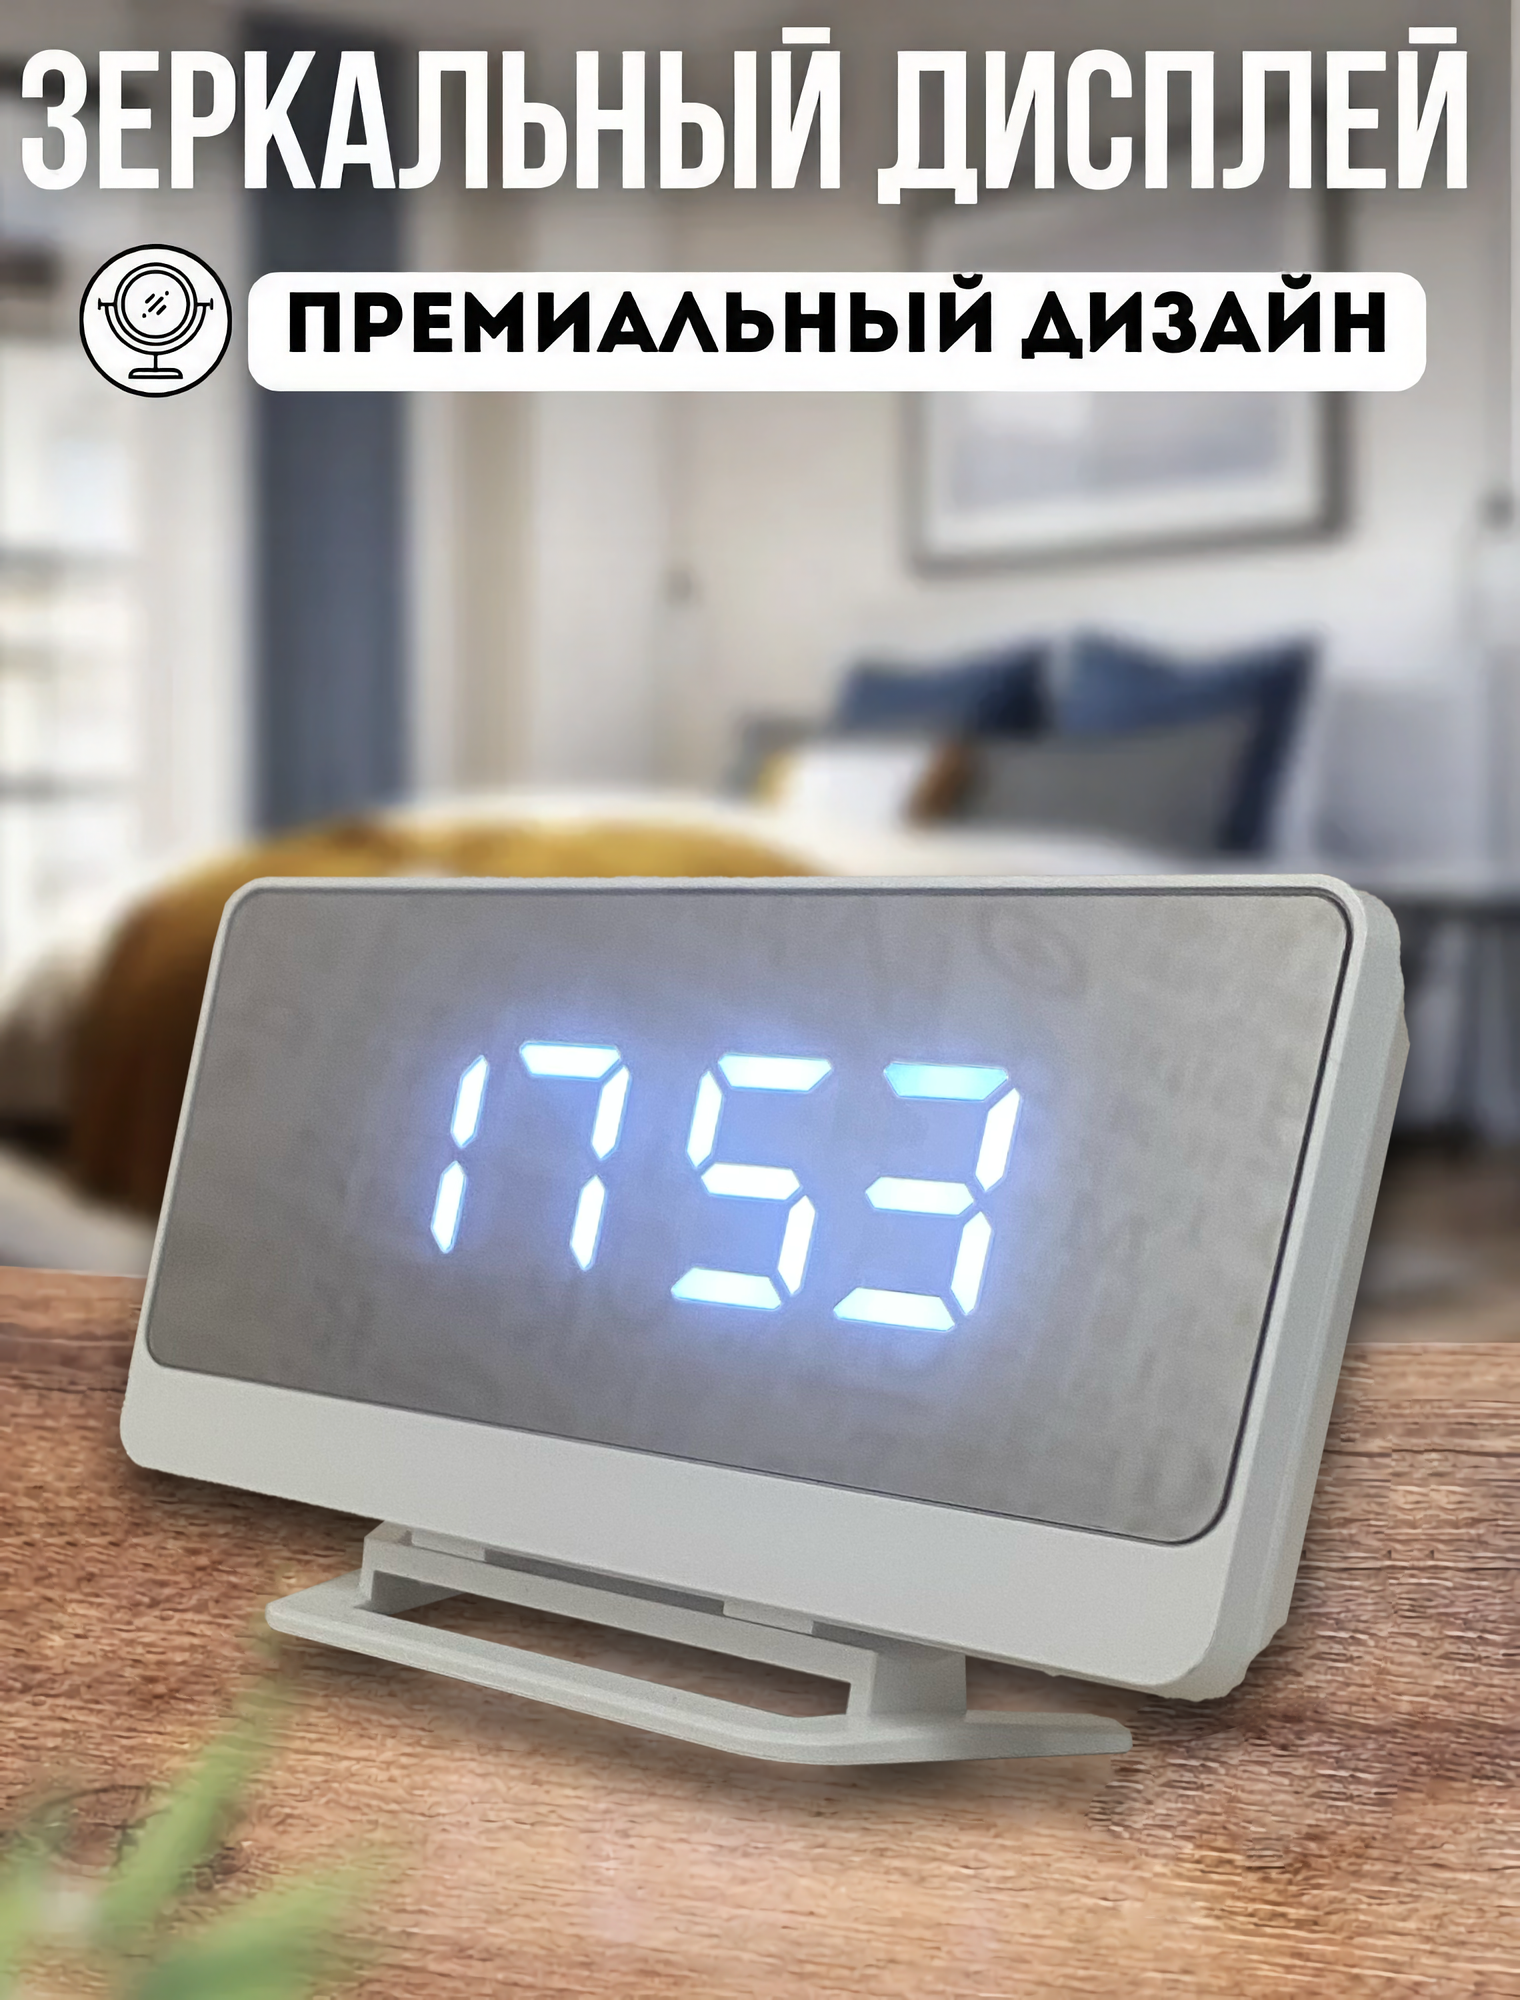 Часы настольные зеркальные электронные с будильником, датчиком температуры, светодиодная белая подсветка